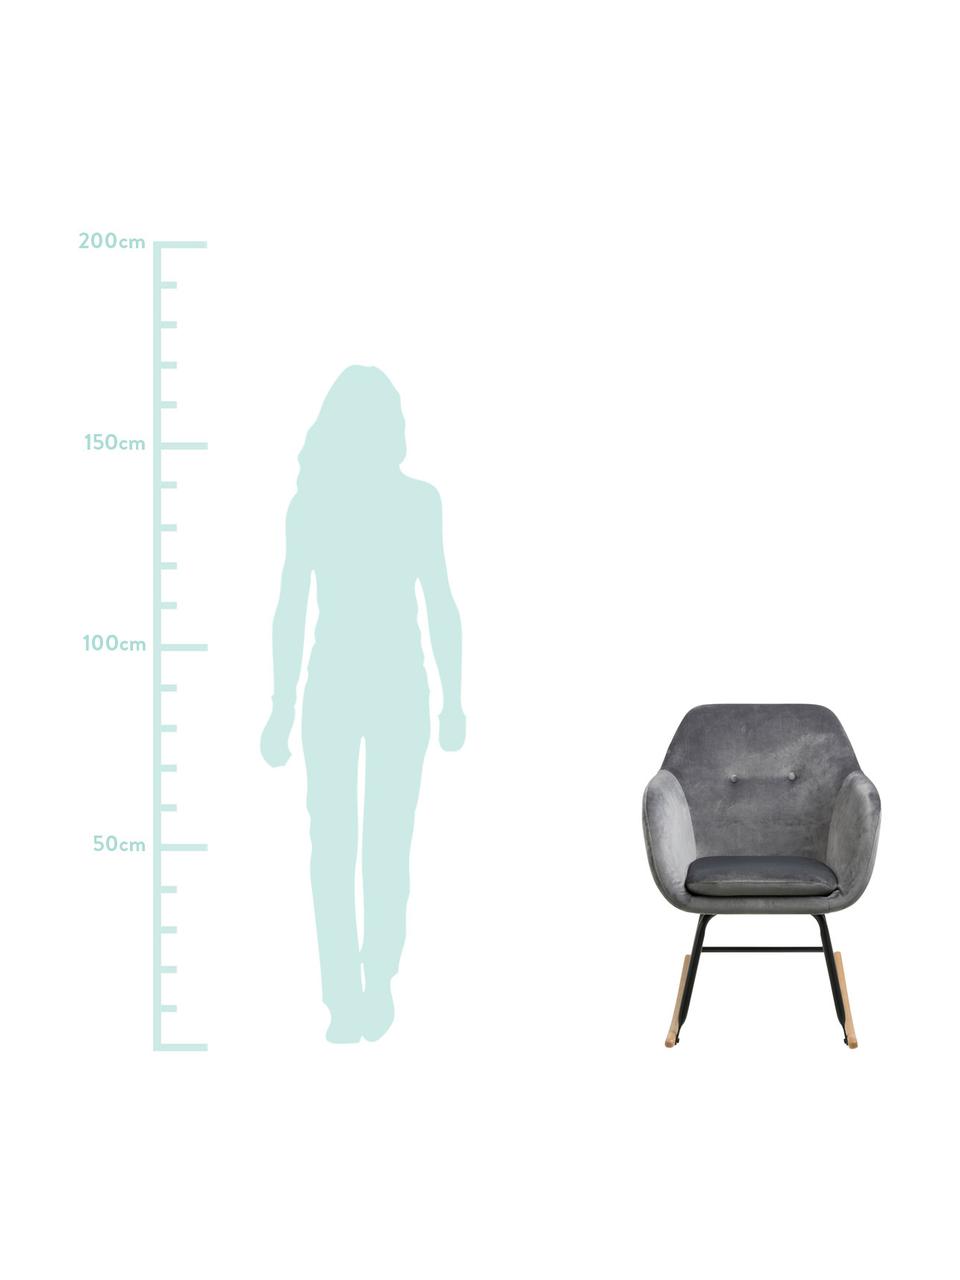 Fluwelen schommelstoel Emilia in grijs, Bekleding: polyester (fluweel), Poten: gepoedercoat metaal, Fluweel grijs, 57 x 81 cm